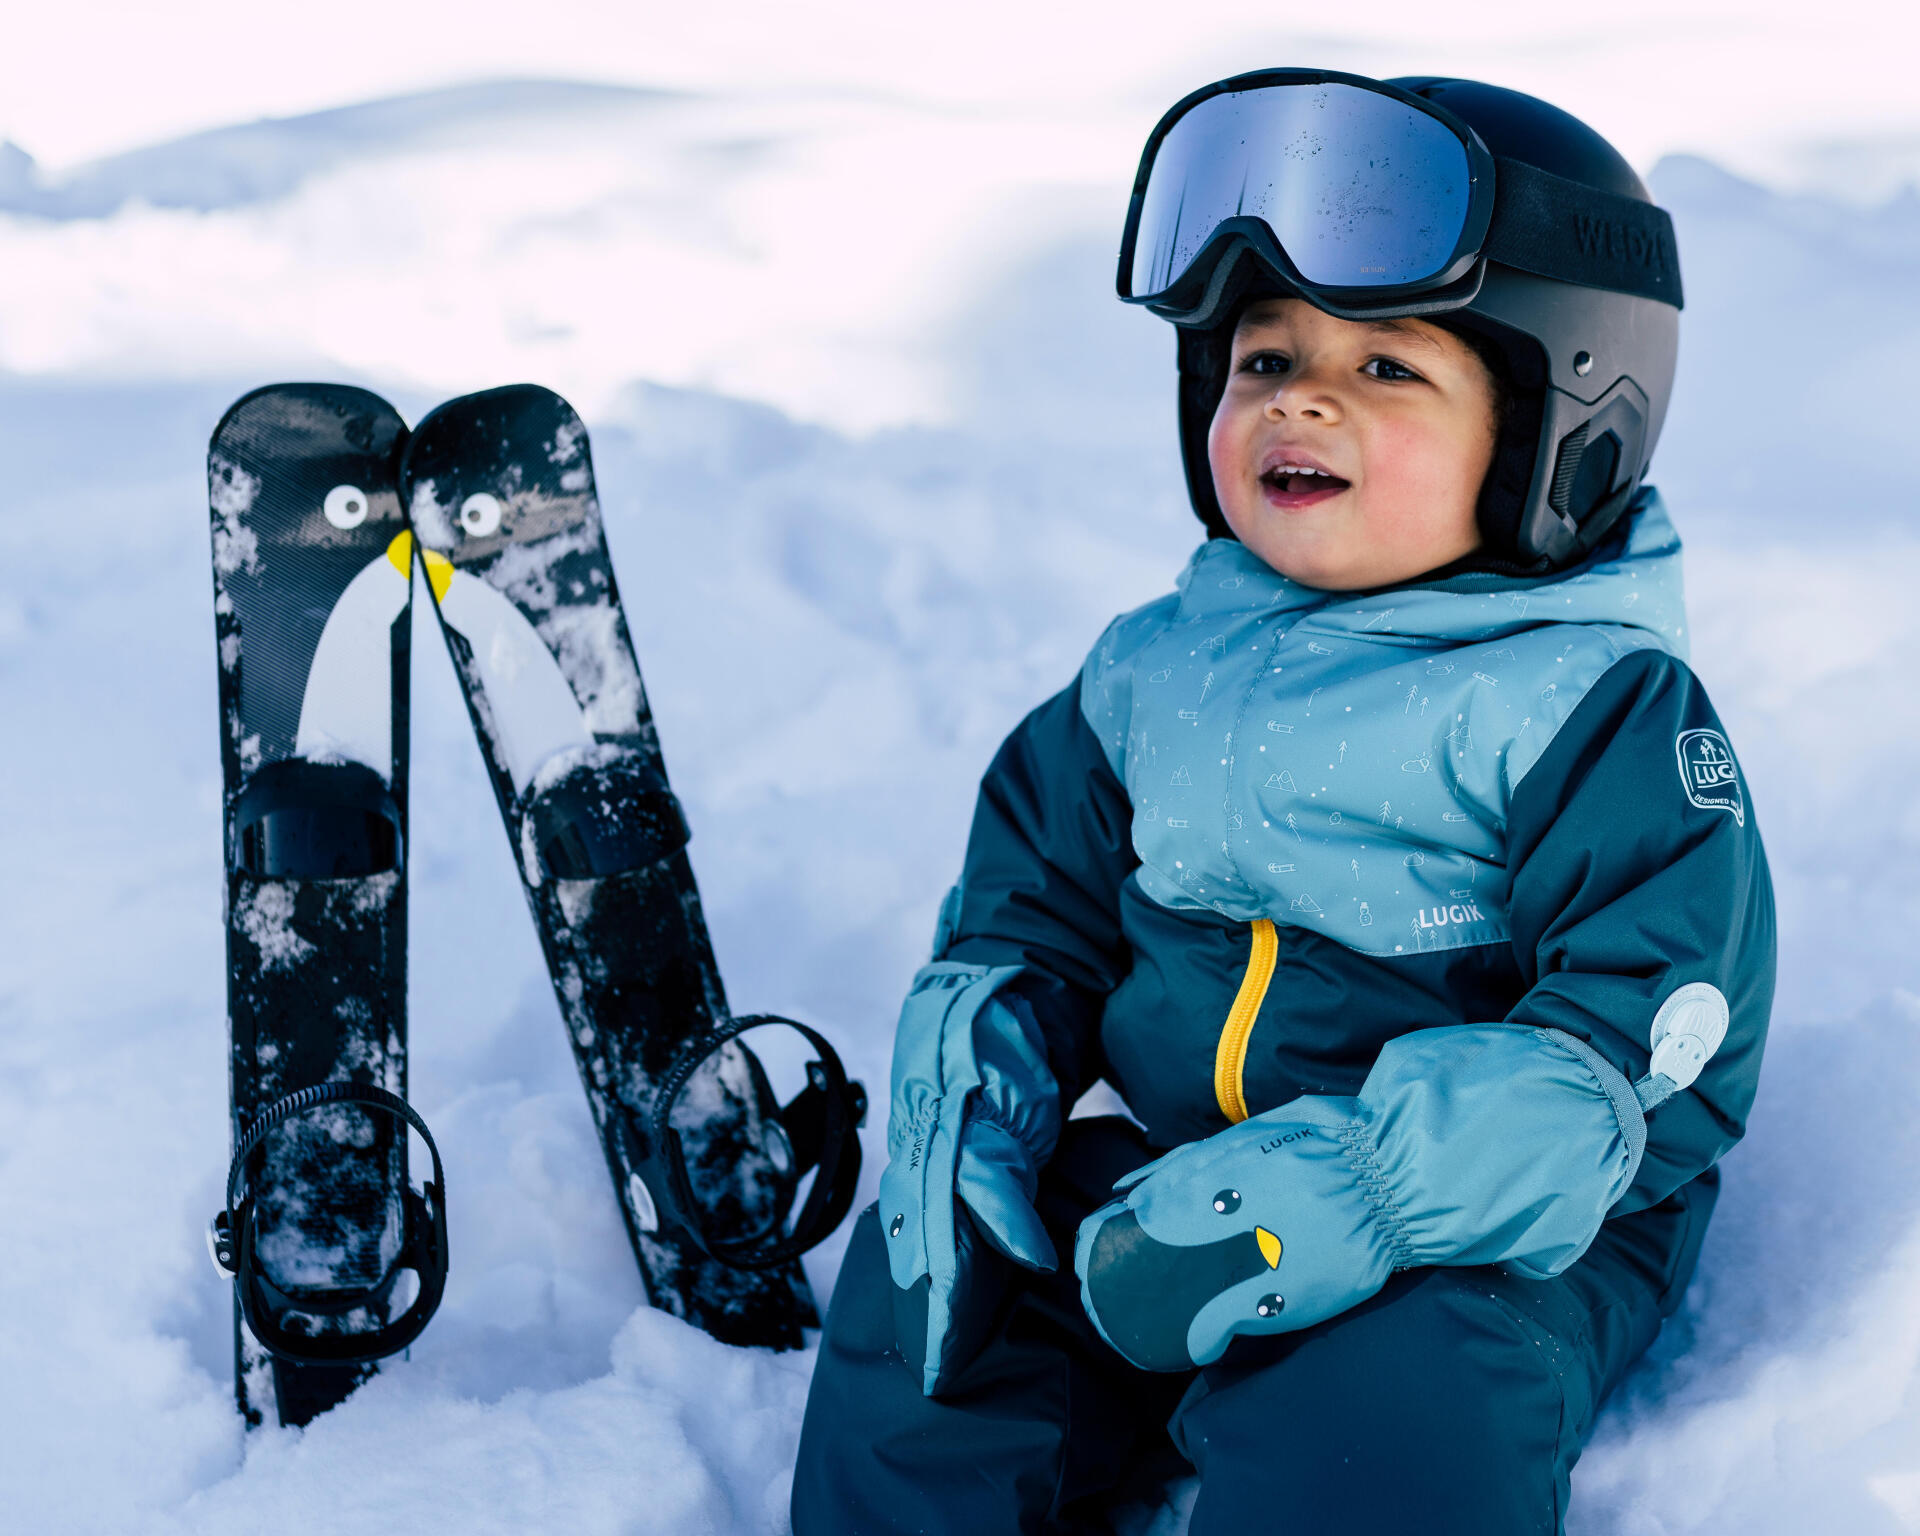 Aller au ski avec bébé, c'est possible ?